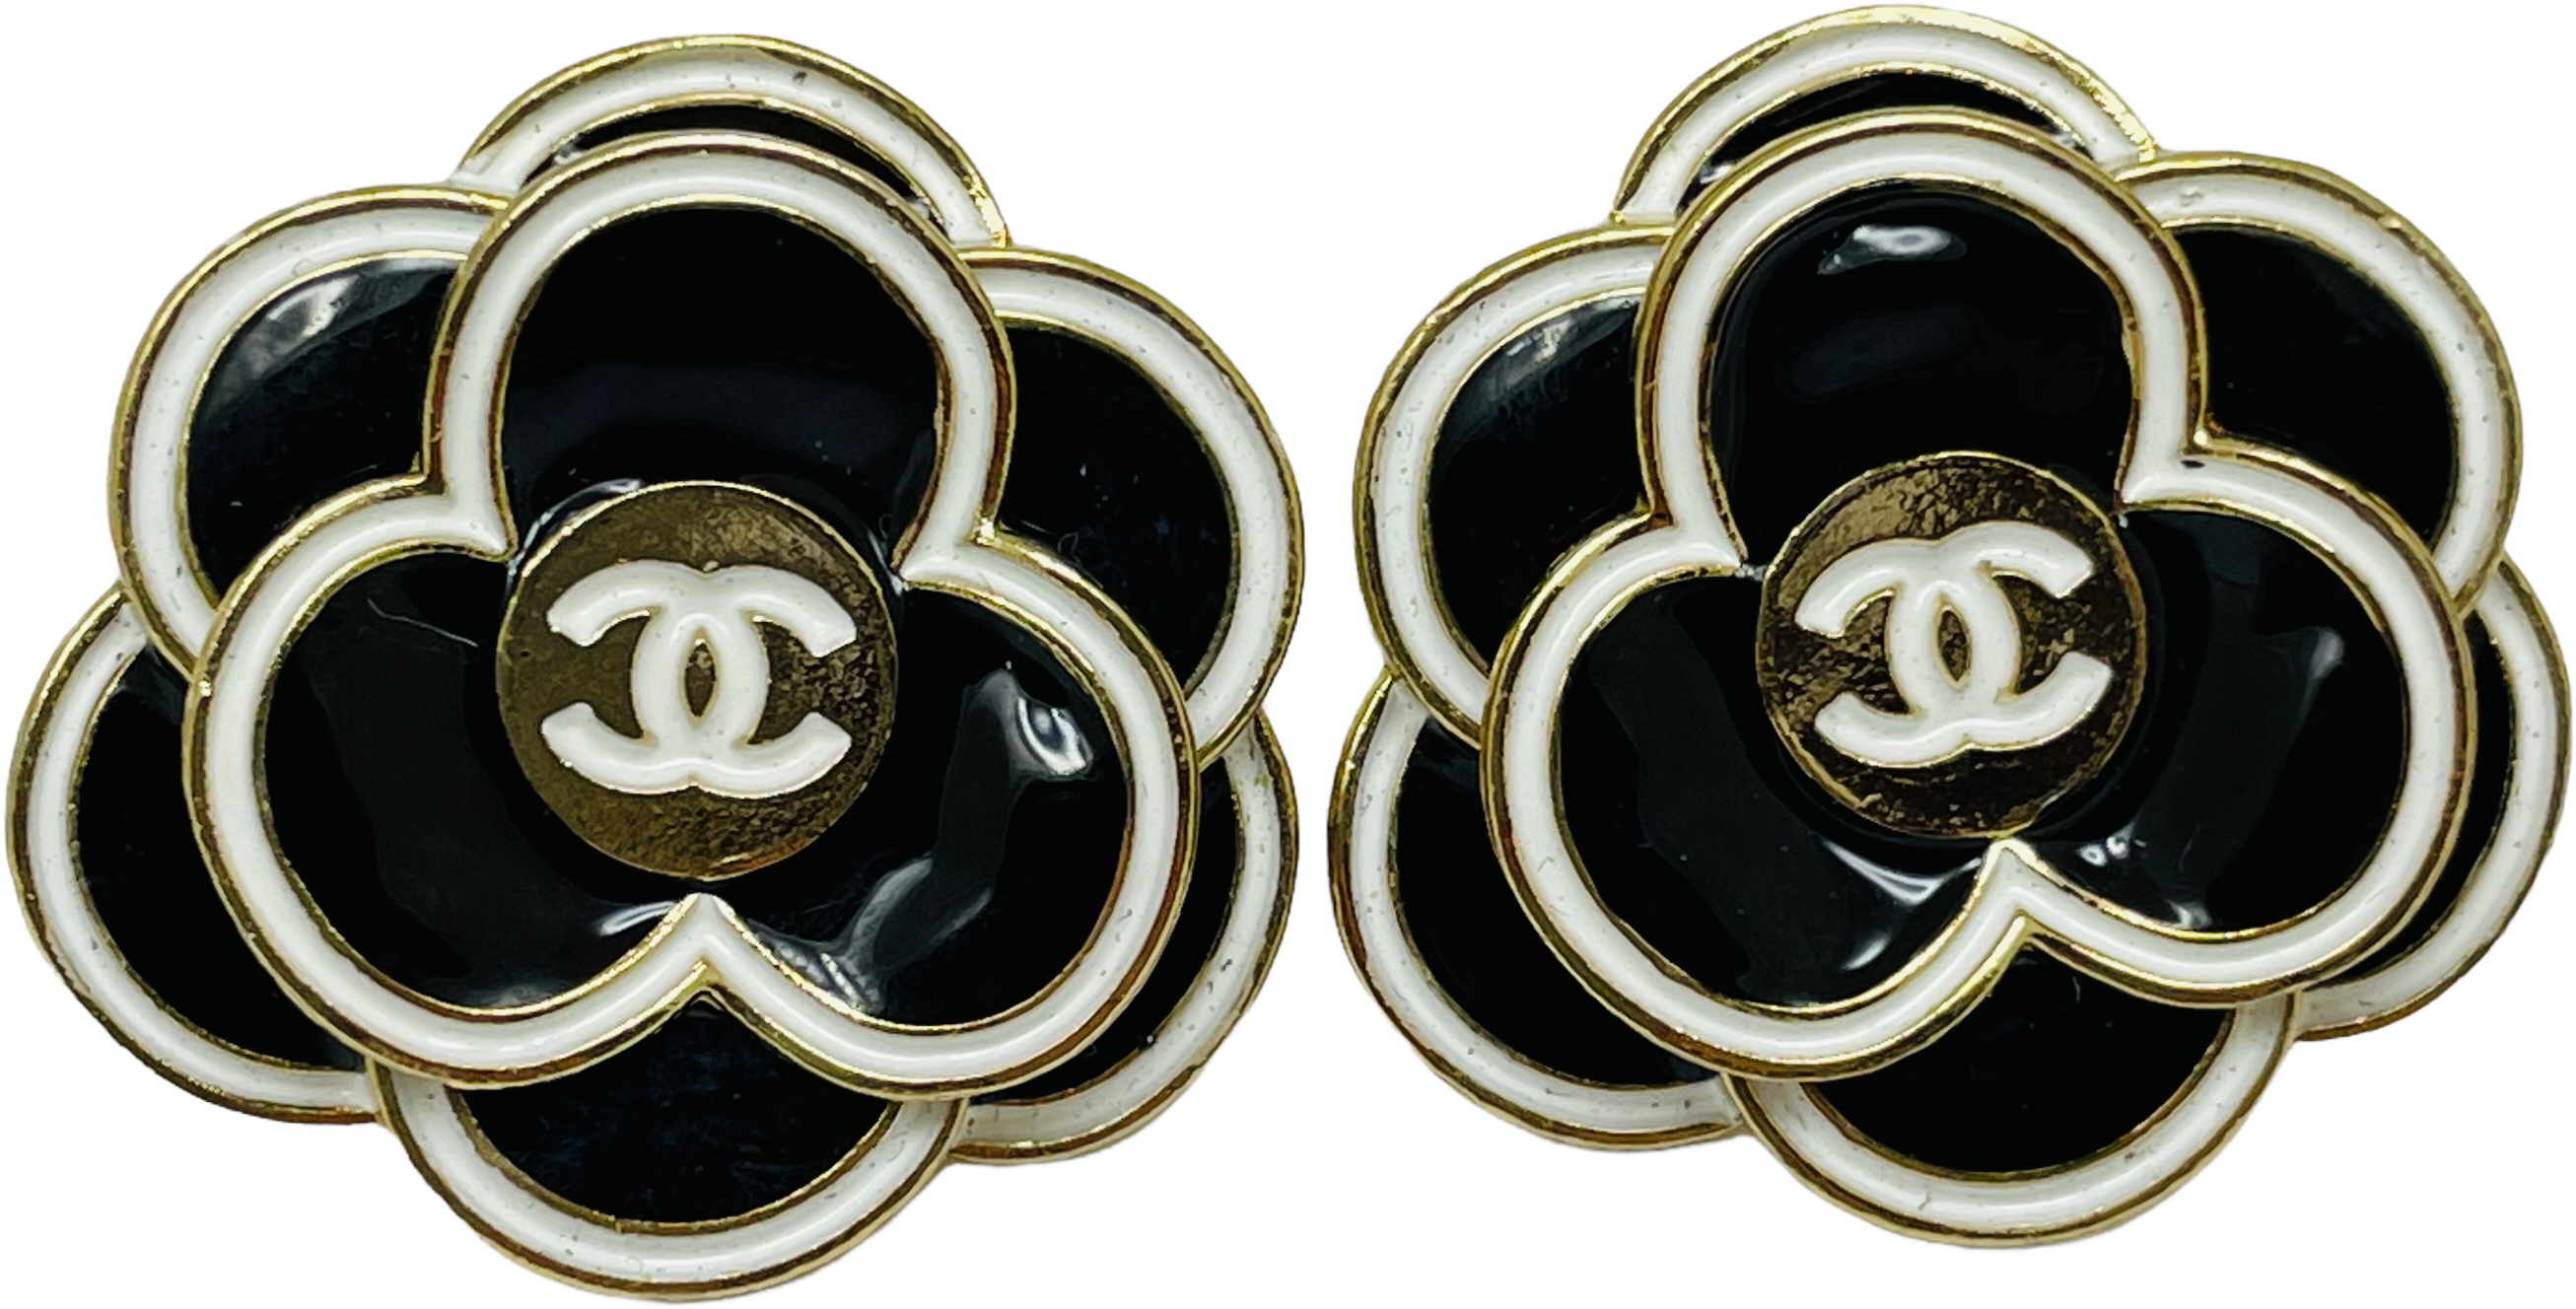 cc earrings for women cc logo chanel